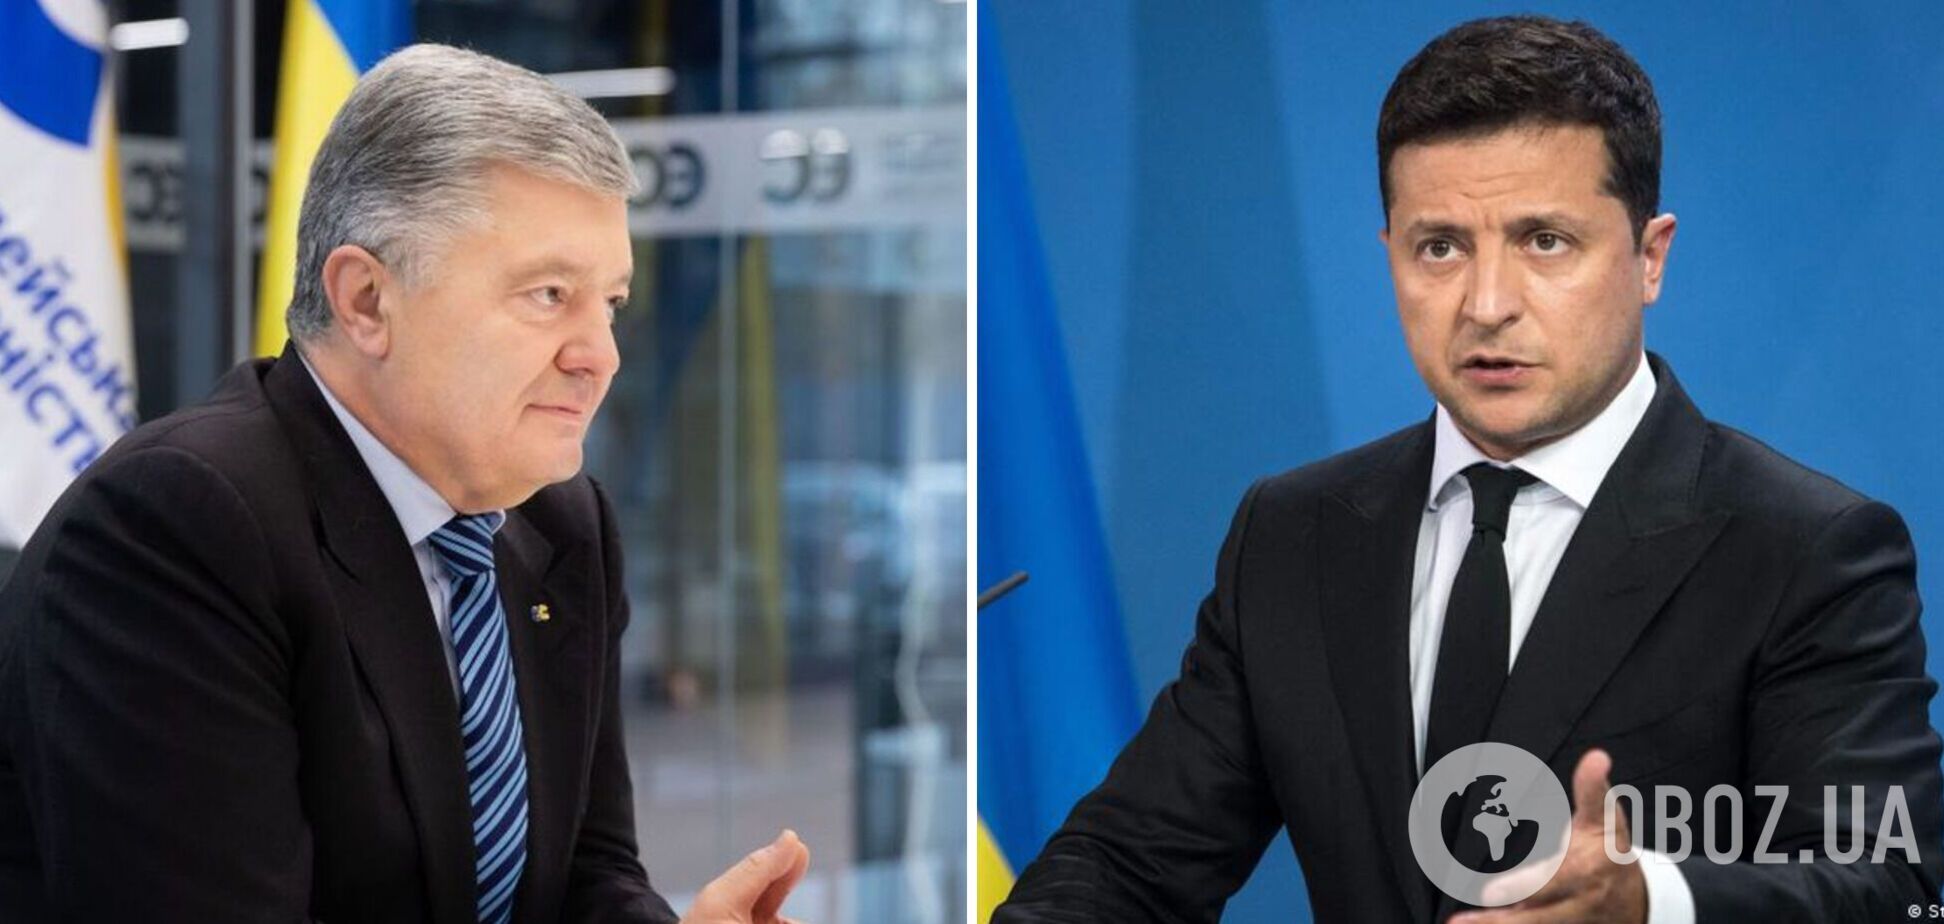 Зеленский больше сосредоточен на аресте Порошенко, чем на объединении Украины против угрозы РФ, – Бильдт